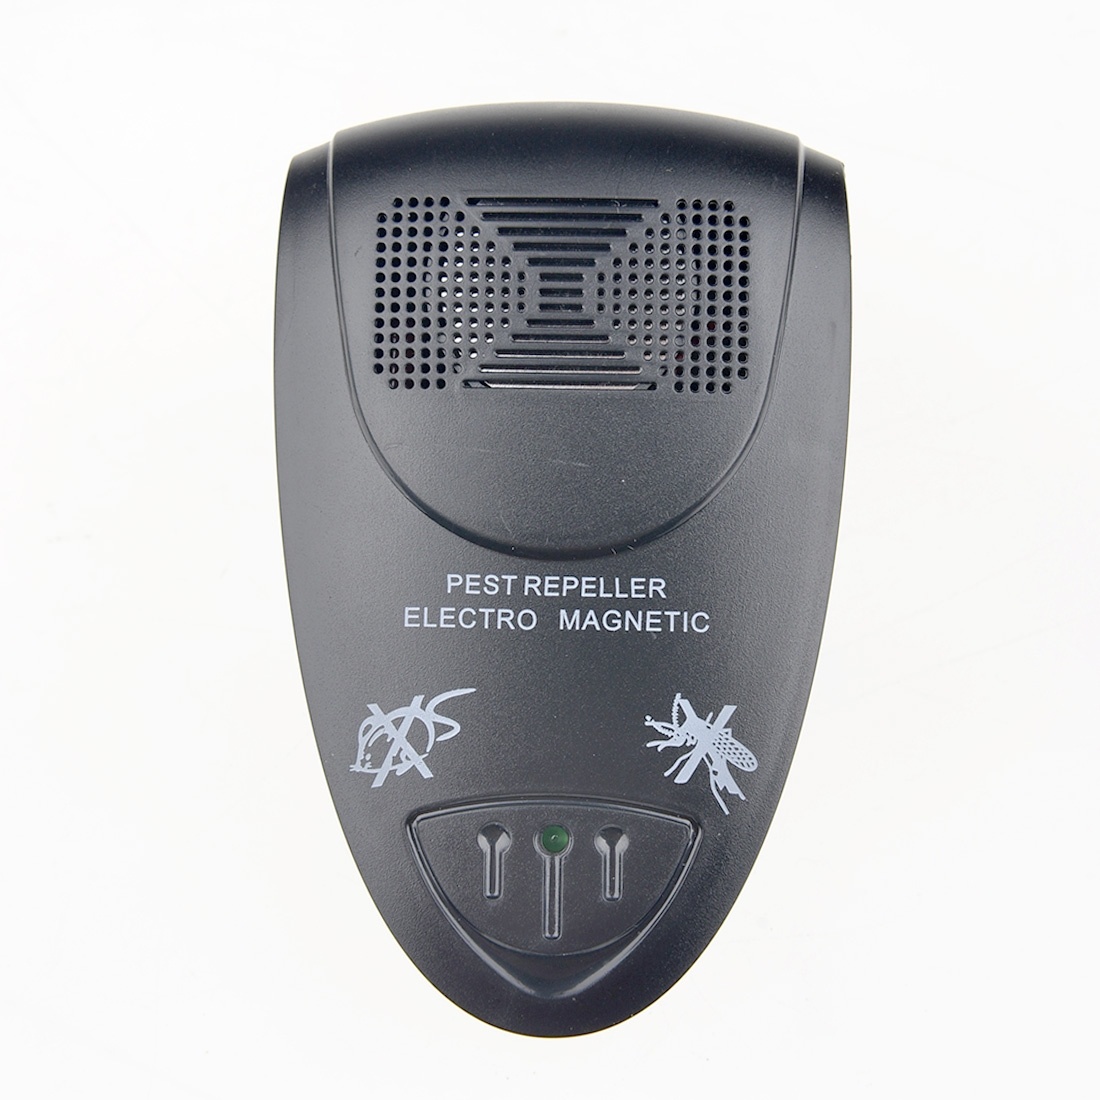 Мышь control. Ultrasonic Electronic Pest Repeller. Электронный отпугиватель мышей. Электронные репеллеры. Smart sensor electromagnetic & Ultrasonic Pest Repeller.